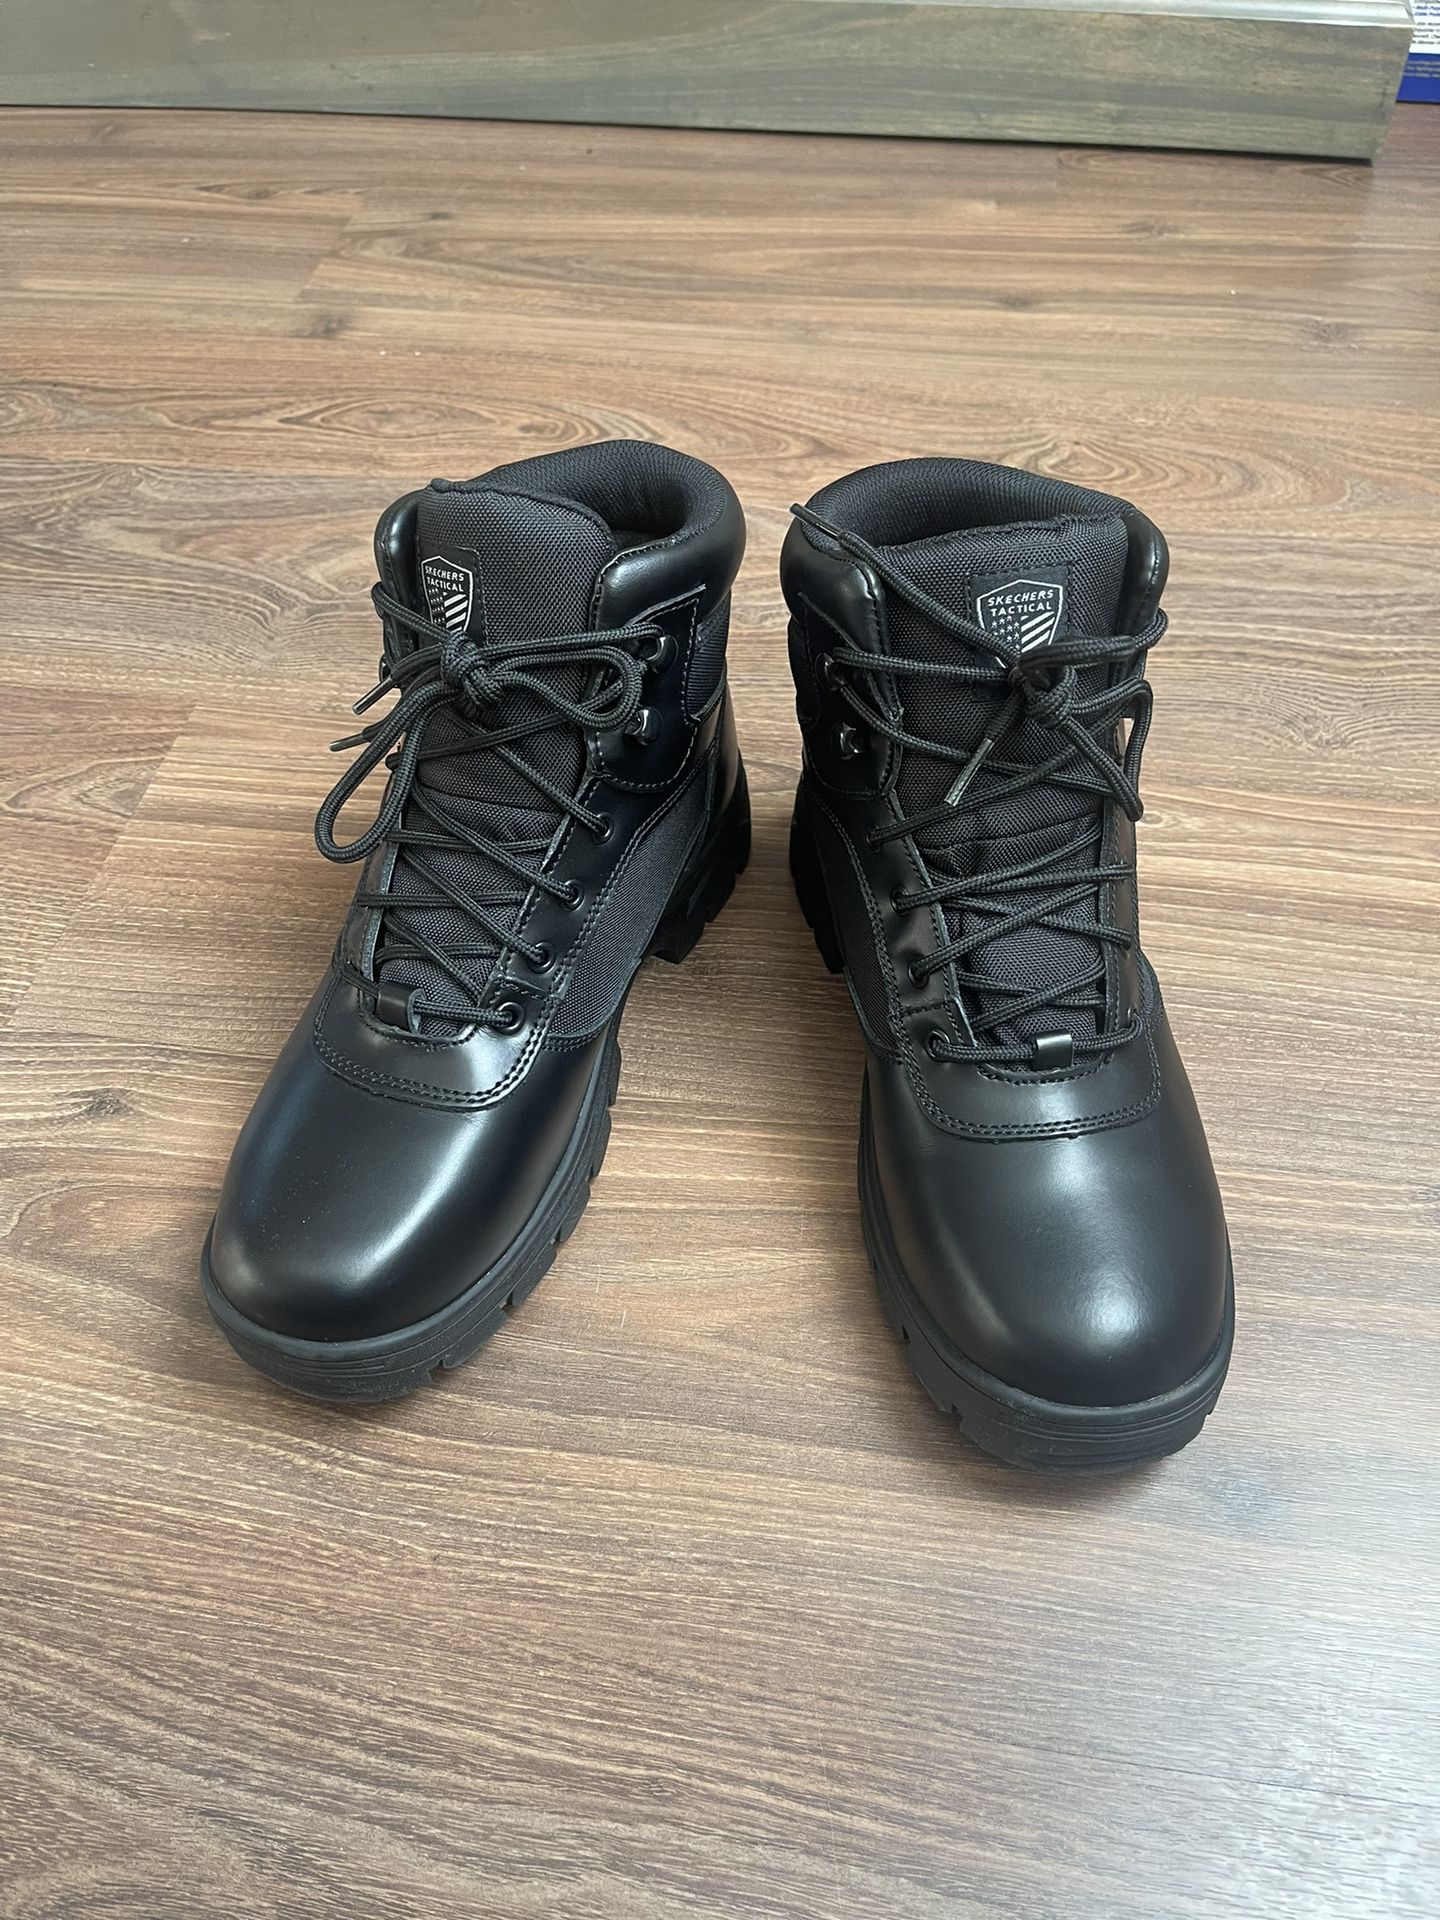 Brand New Skechers Combat Work Boots